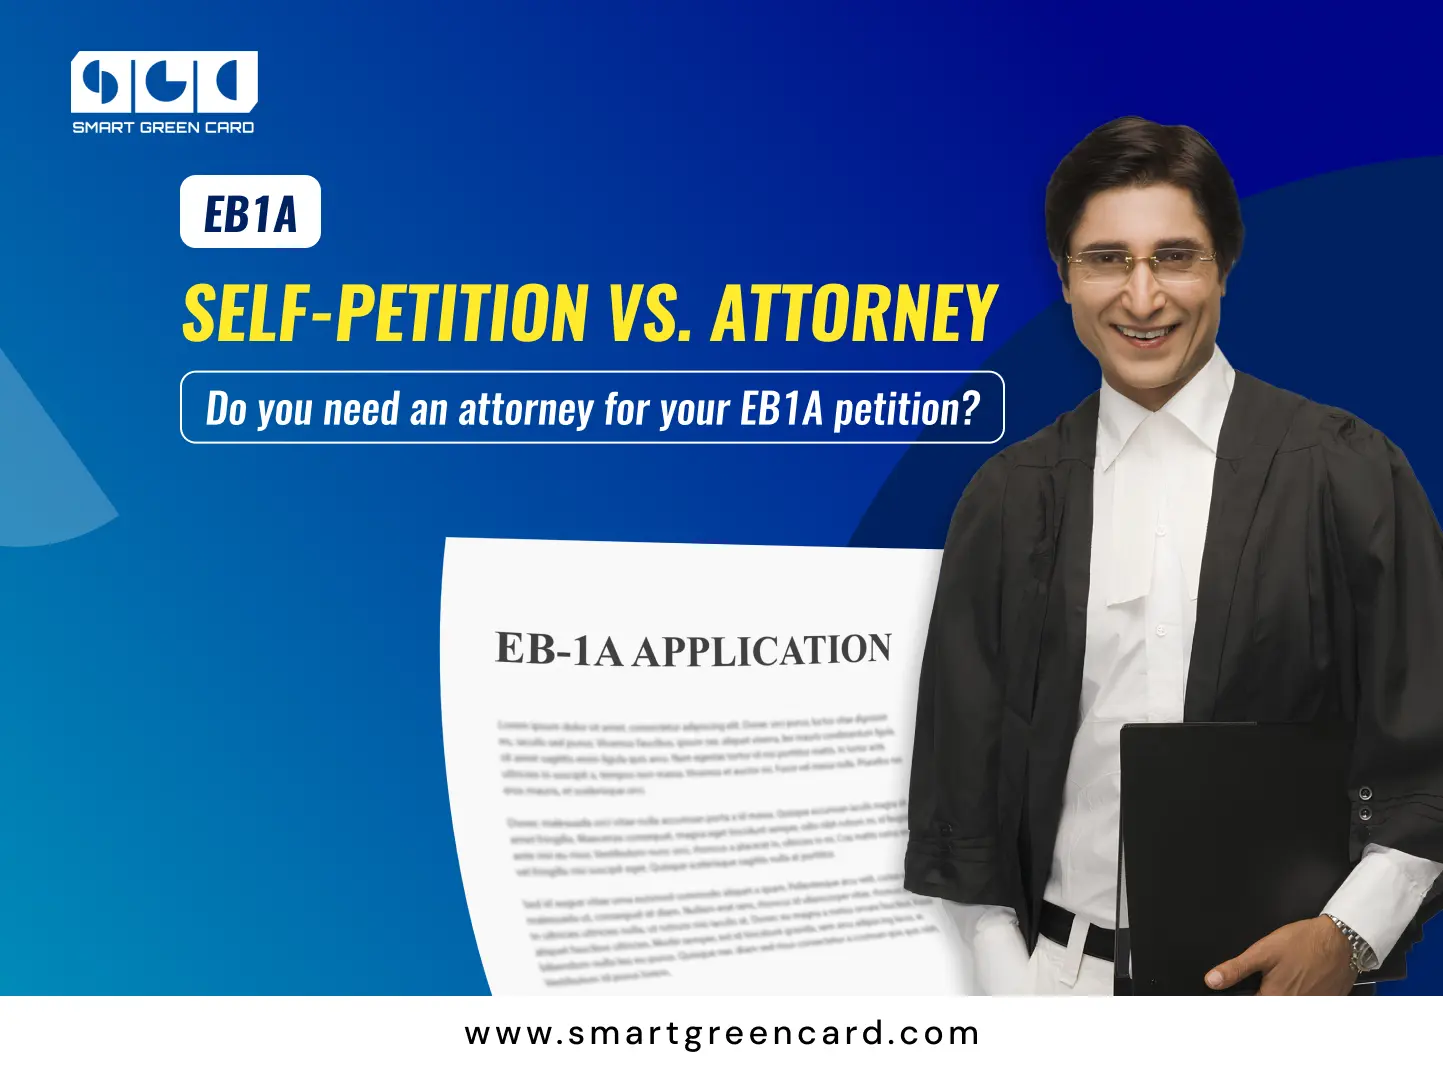 EB1A Self-Petition vs. Attorney